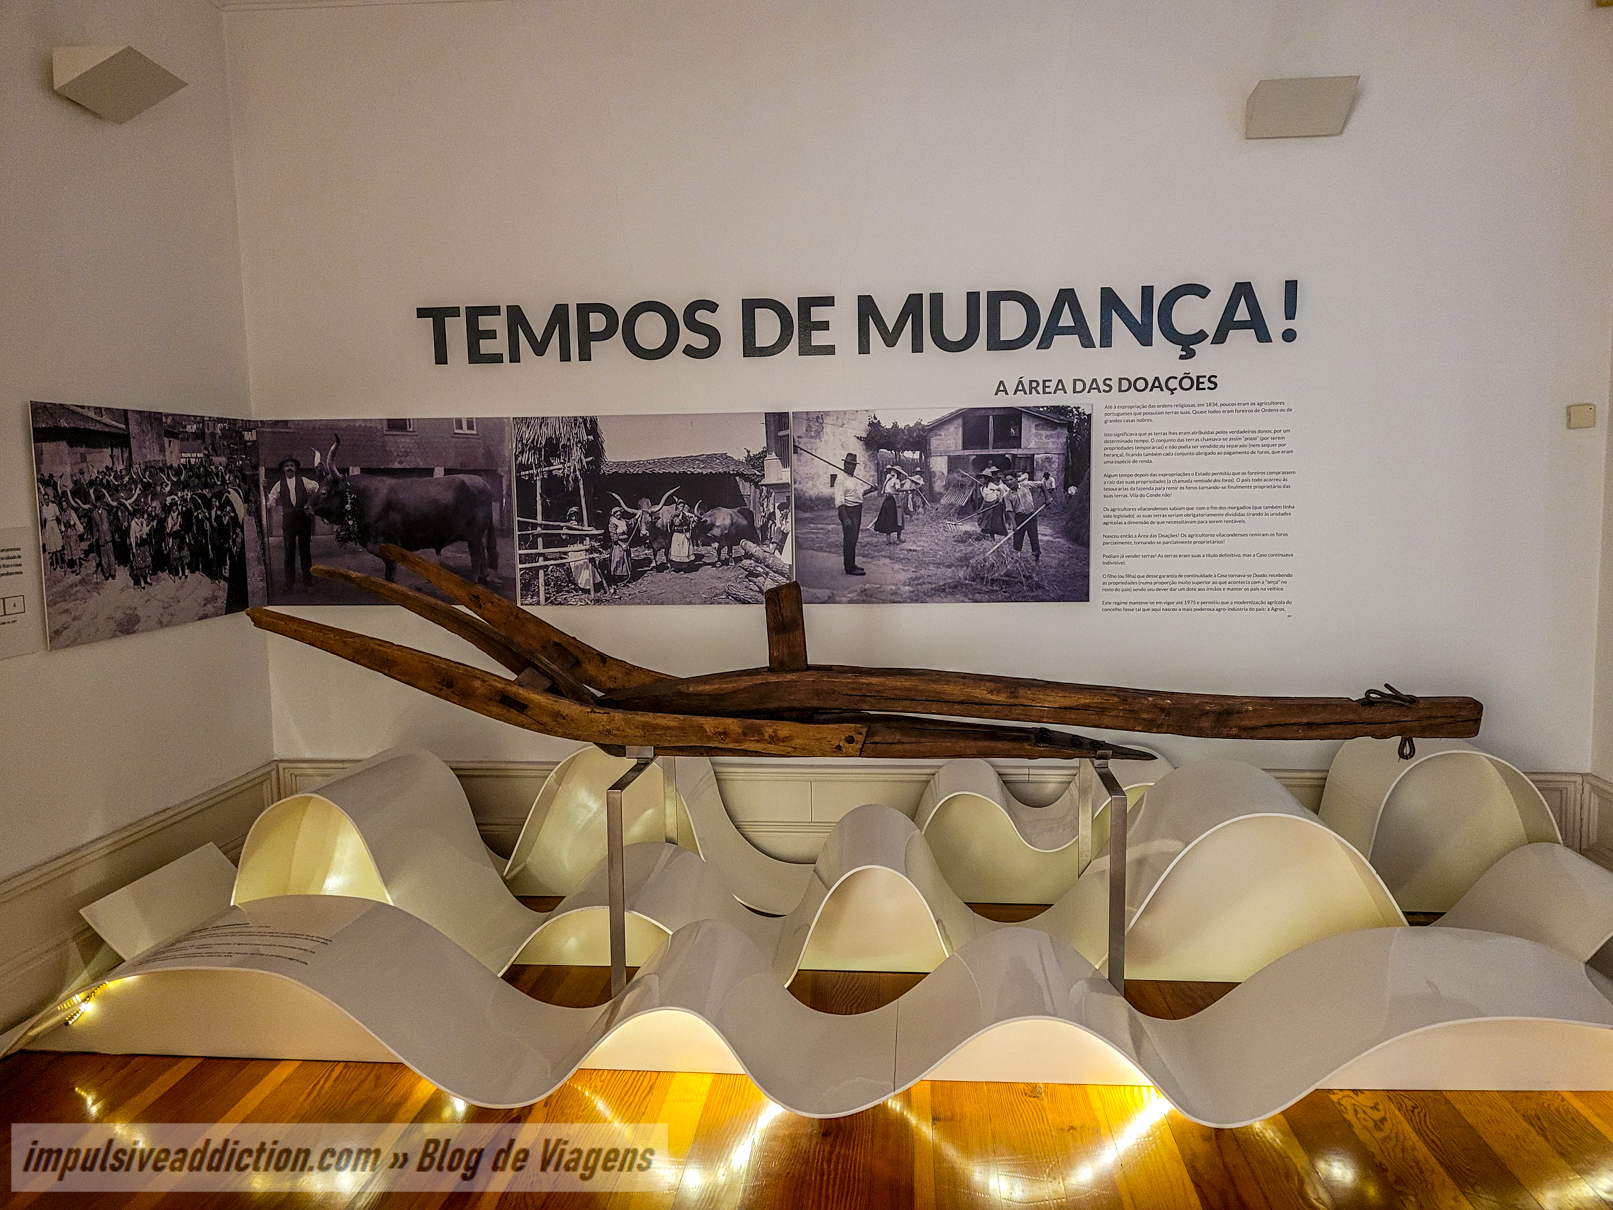 Vila do Conde Memory Center